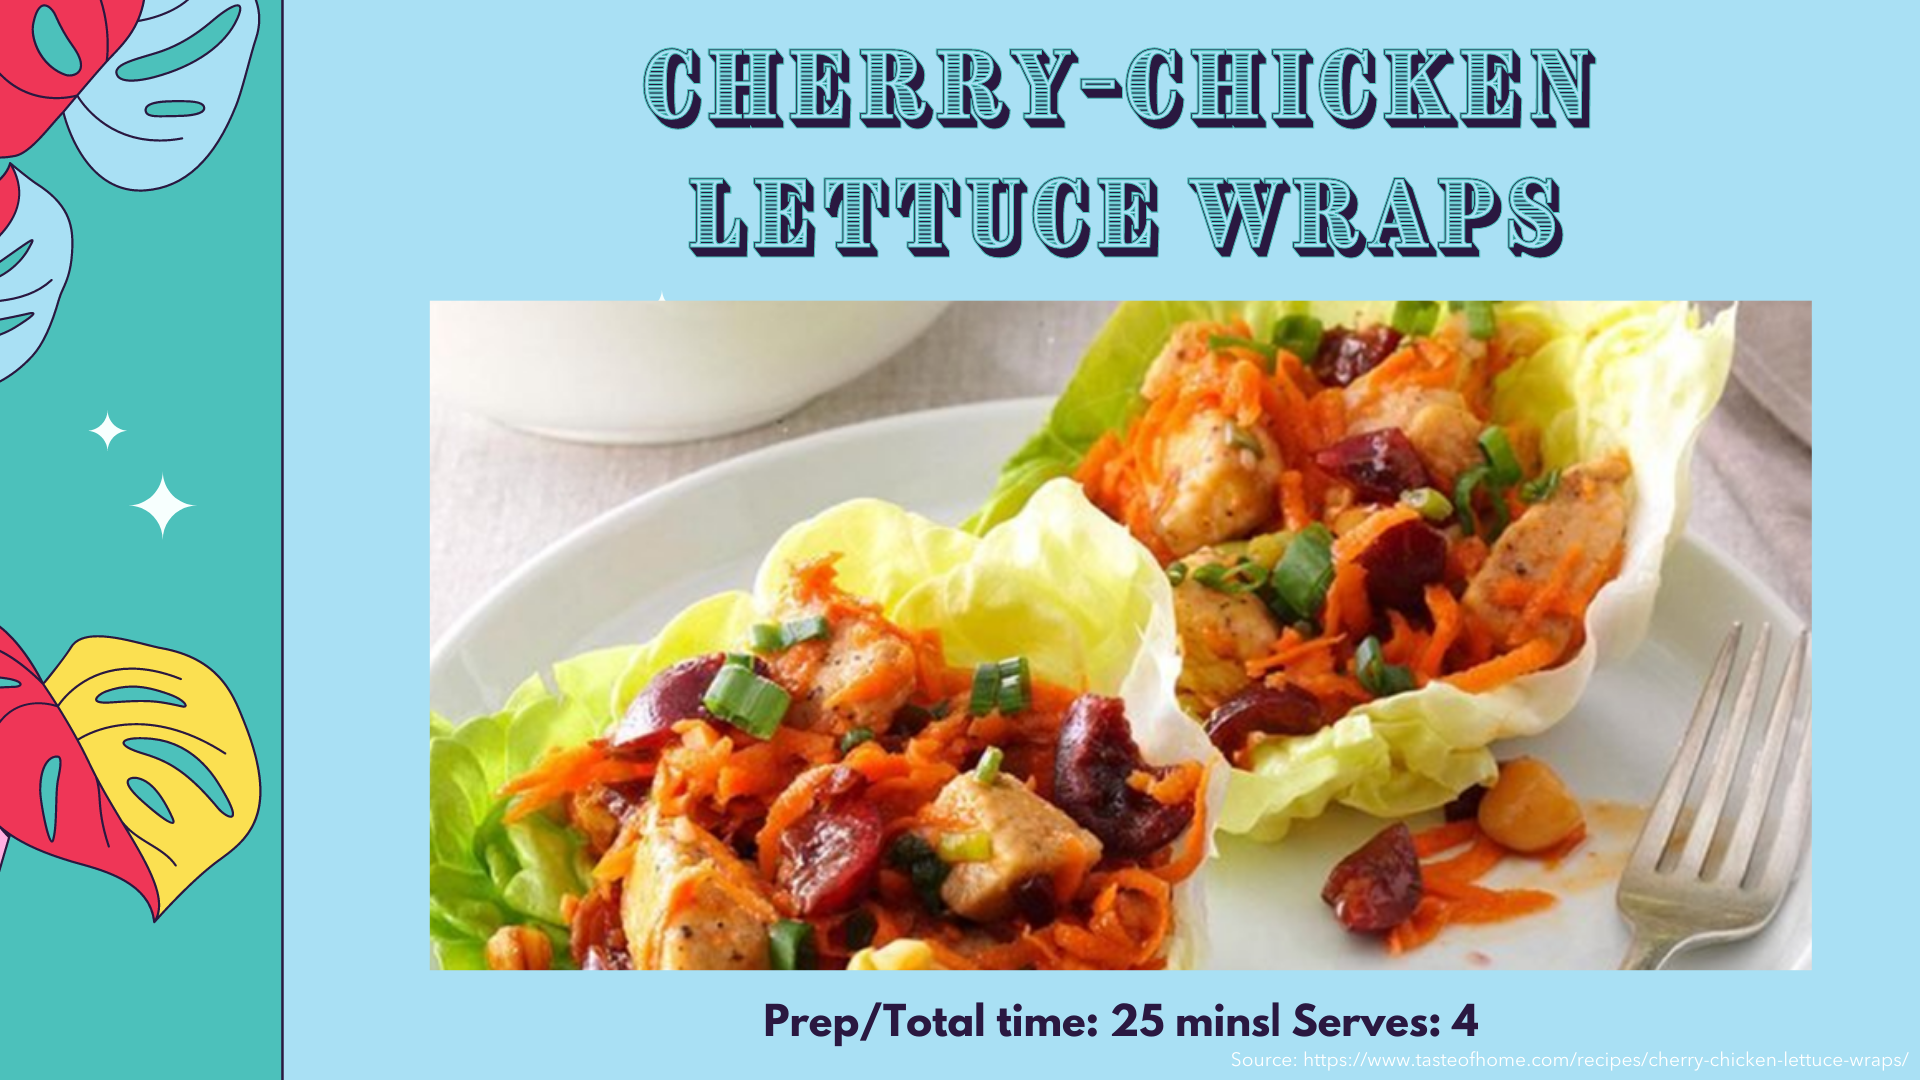 Cherry-chicken wraps